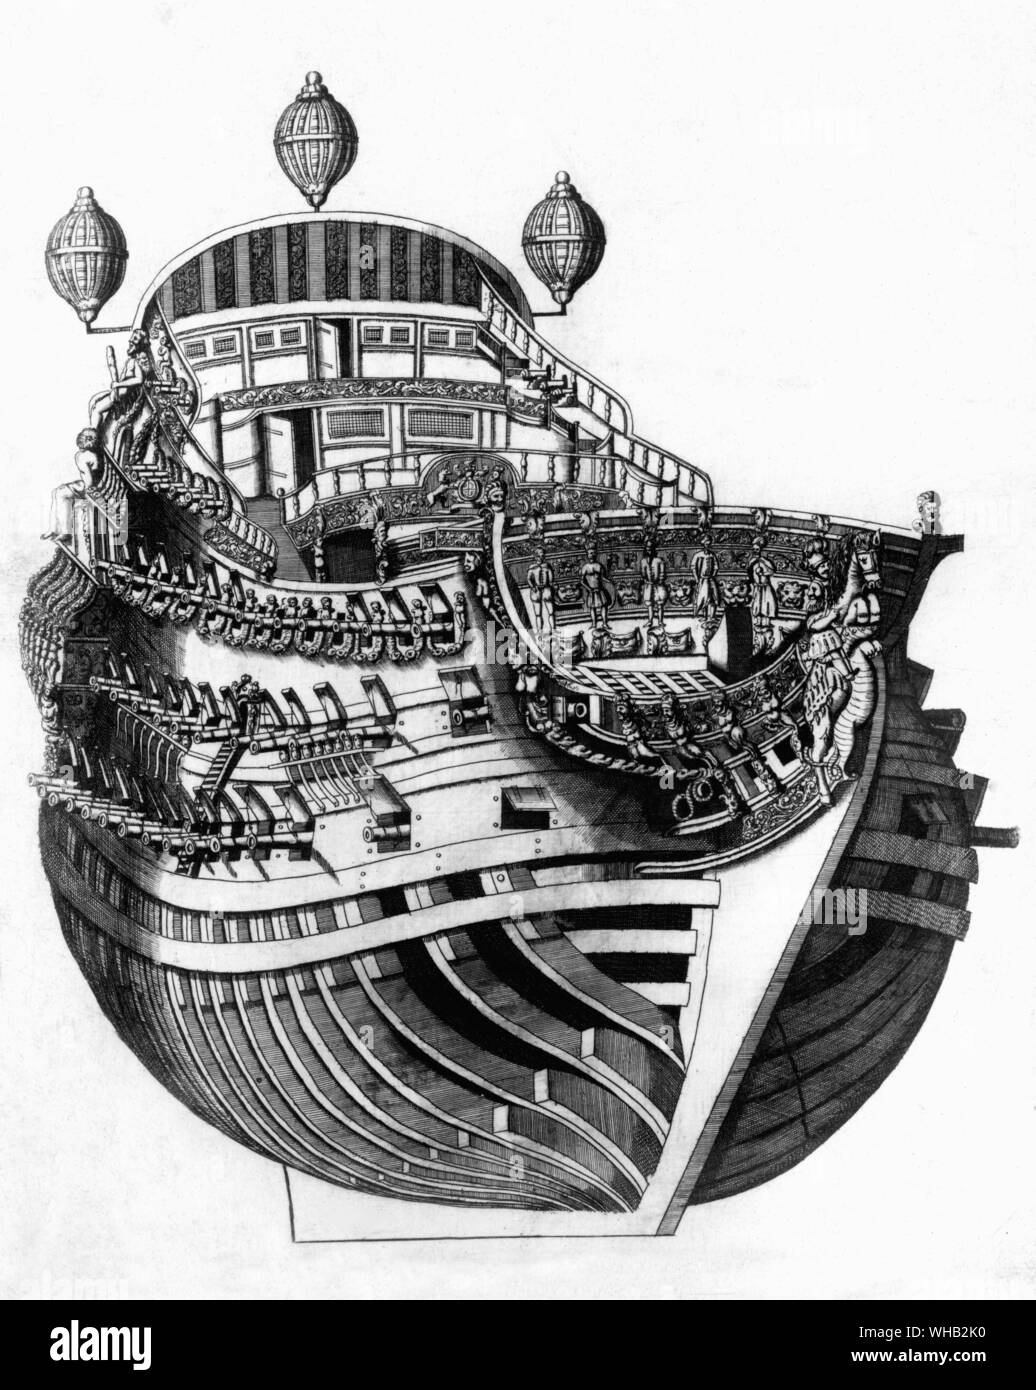 Allgemeines Erscheinungsbild wird aus dem 17. Jahrhundert, zu spät sein. Vielleicht Französisch oder Englisch. Könnte HMS Prince.. Stockfoto